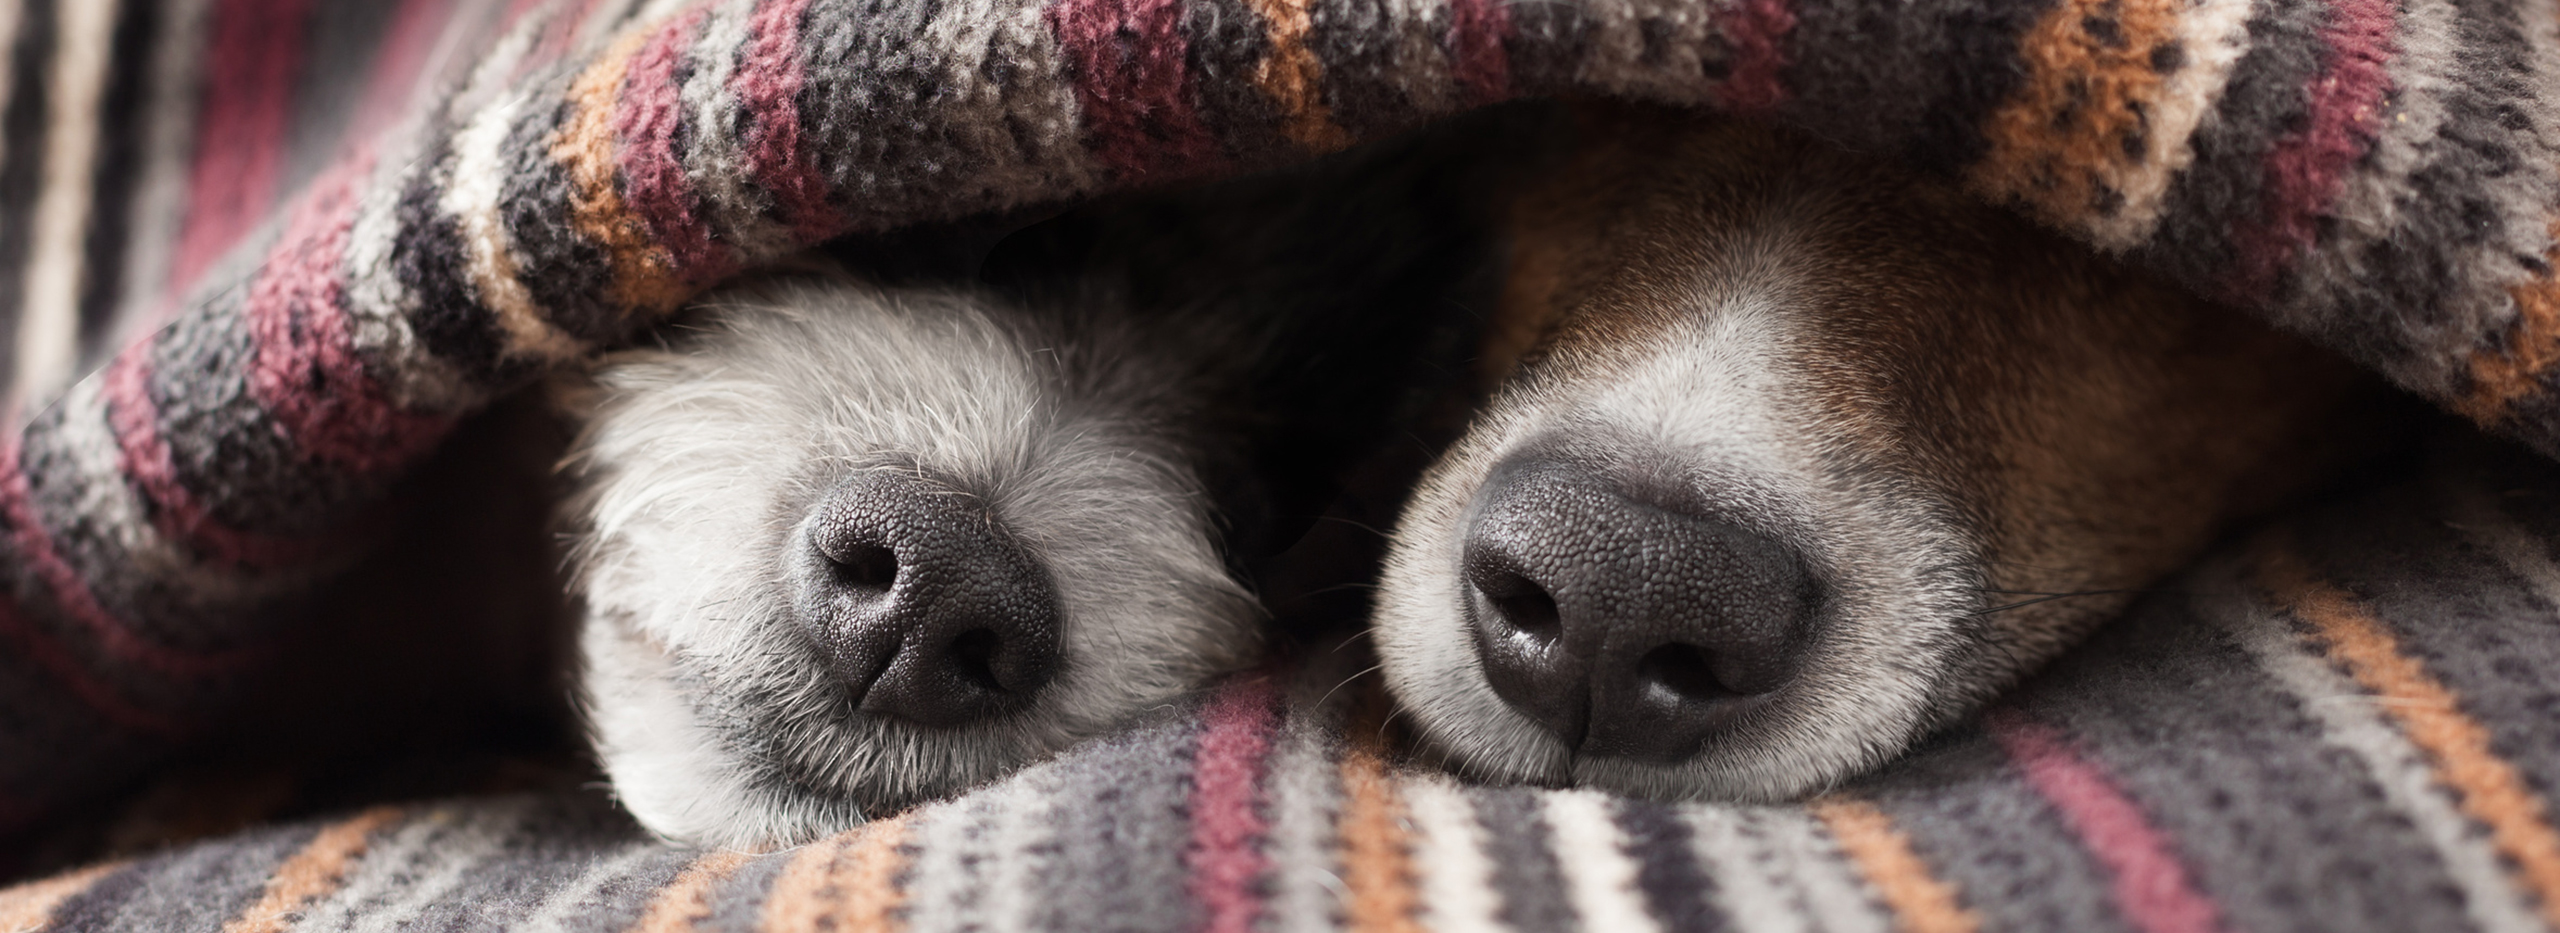 Zwei Hundeschnauzen schauen aus einer Decke heraus